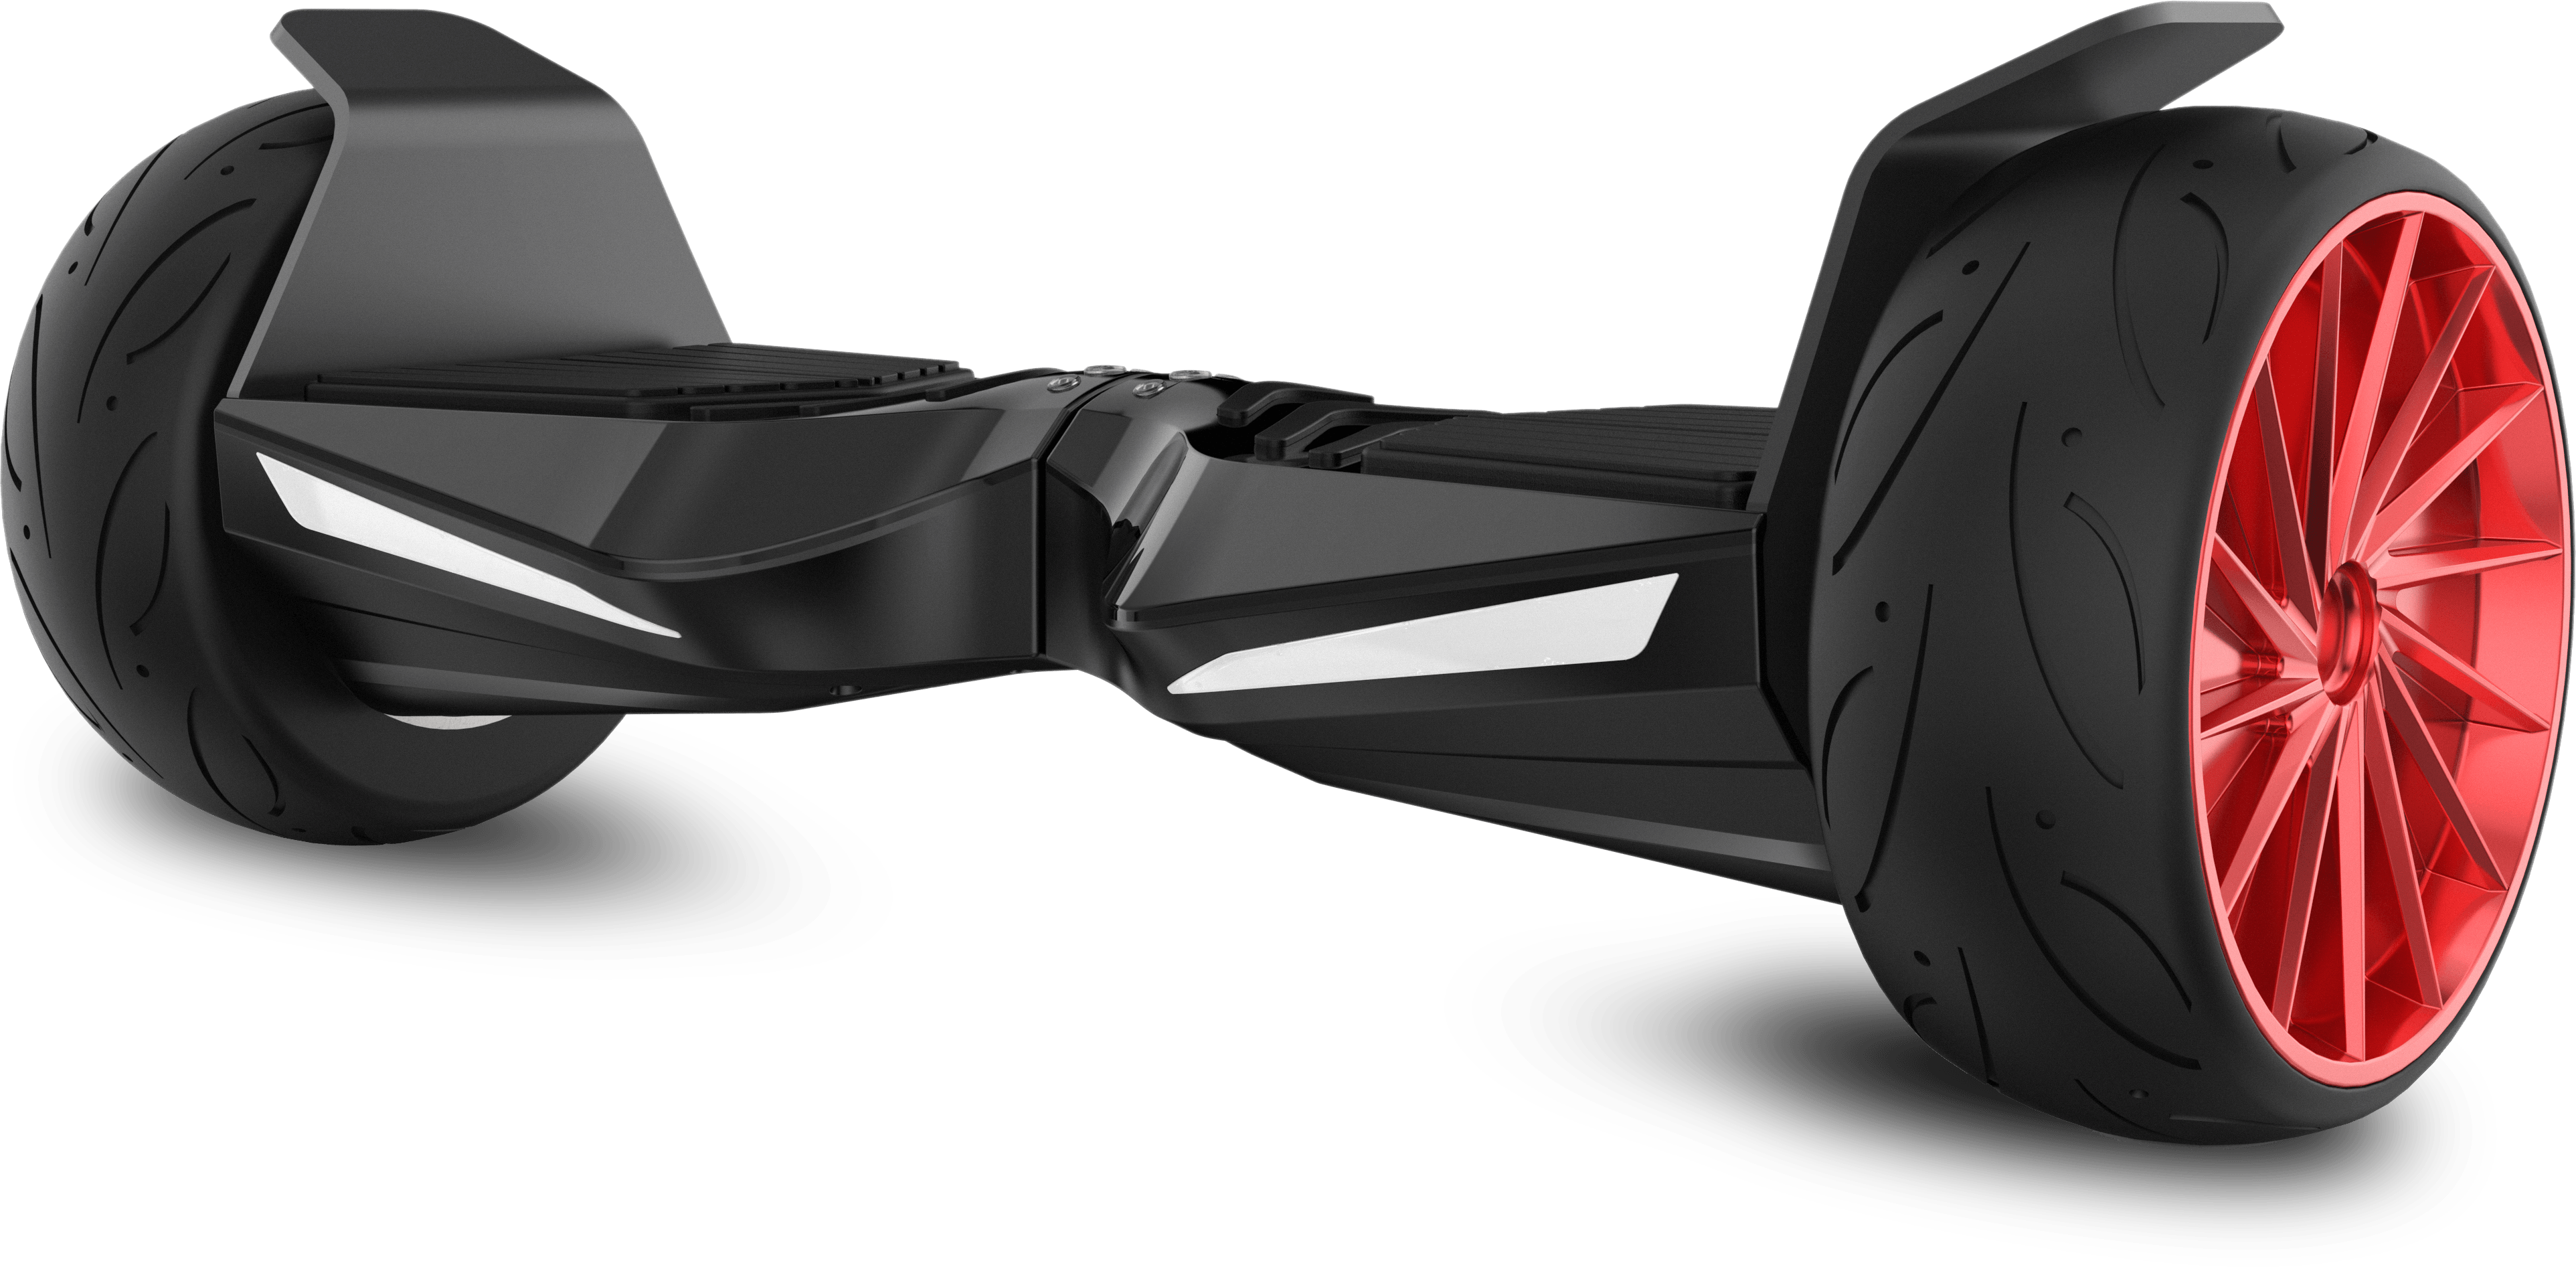 Hoverboard Original Kiwane XR 800W - Rapidité et agilité.